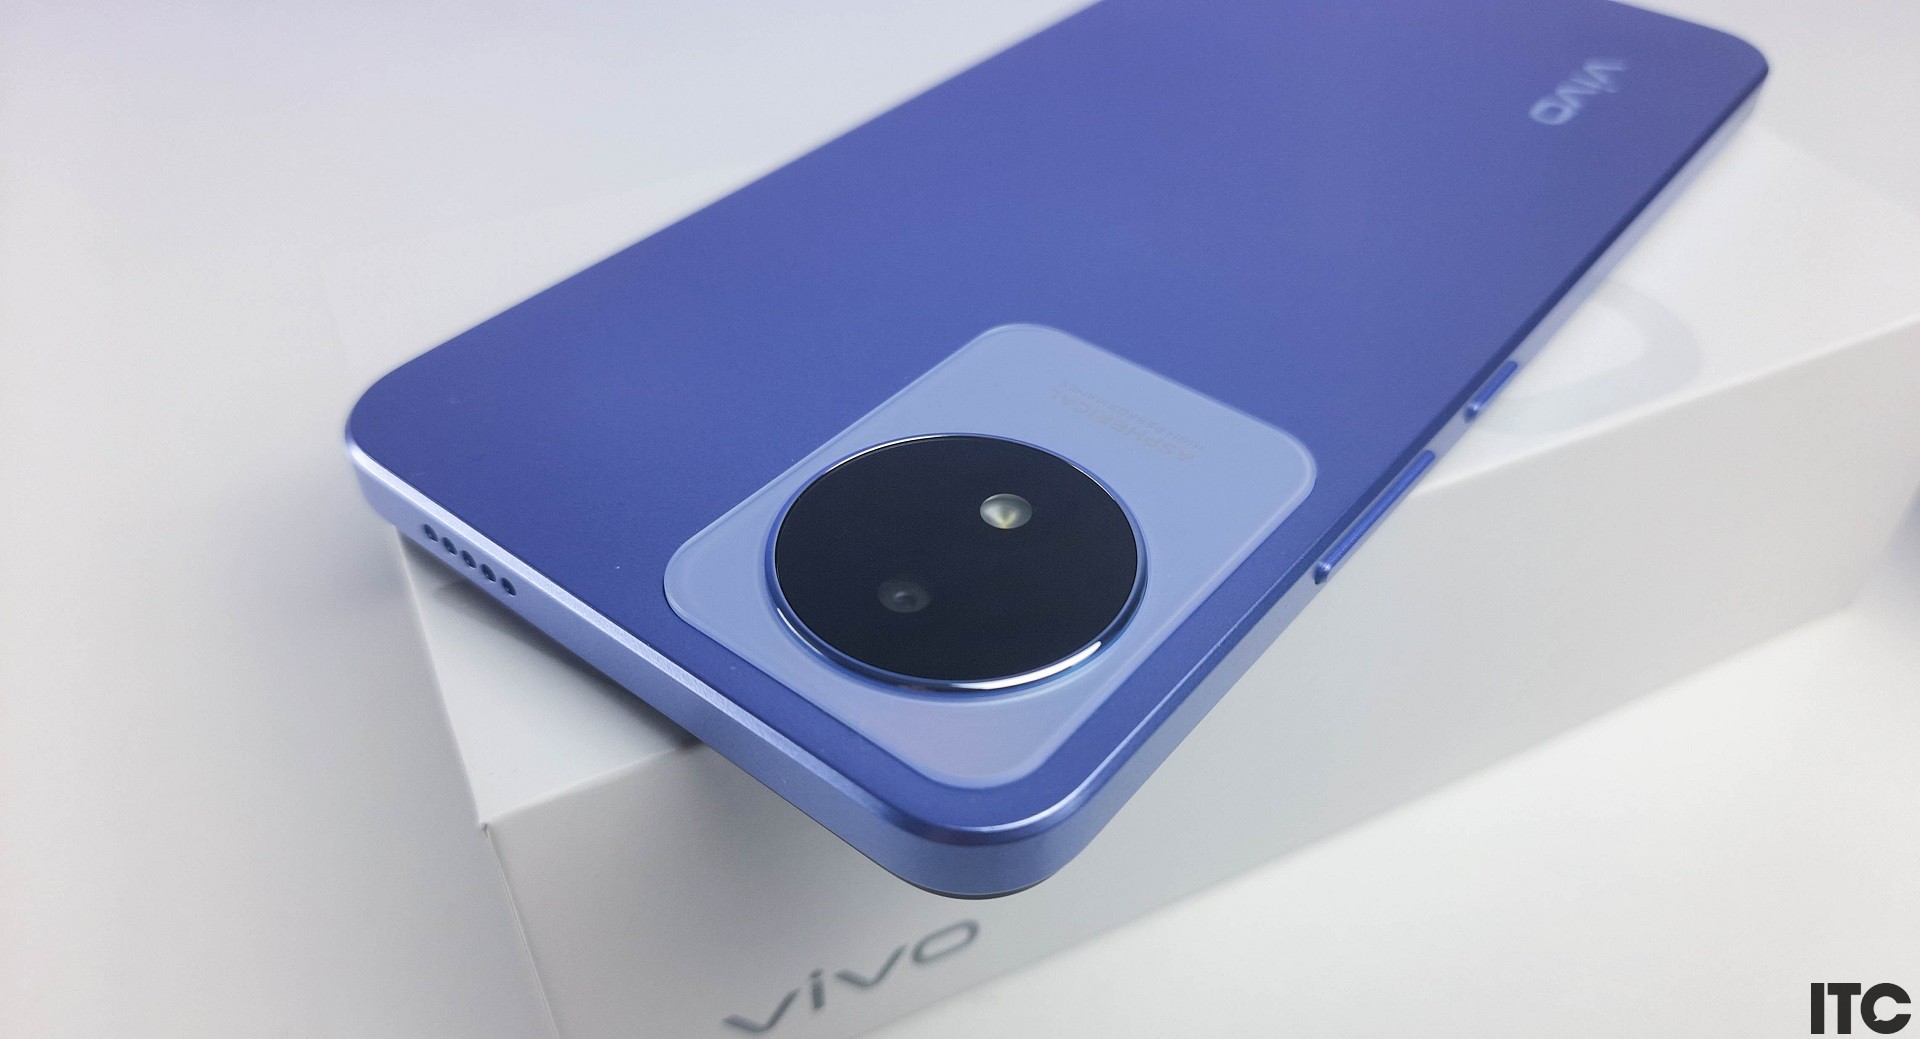 Огляд смартфона Vivo Y02: сучасний дизайн, батарея 5000 мАг та порт MicroUSB за $95